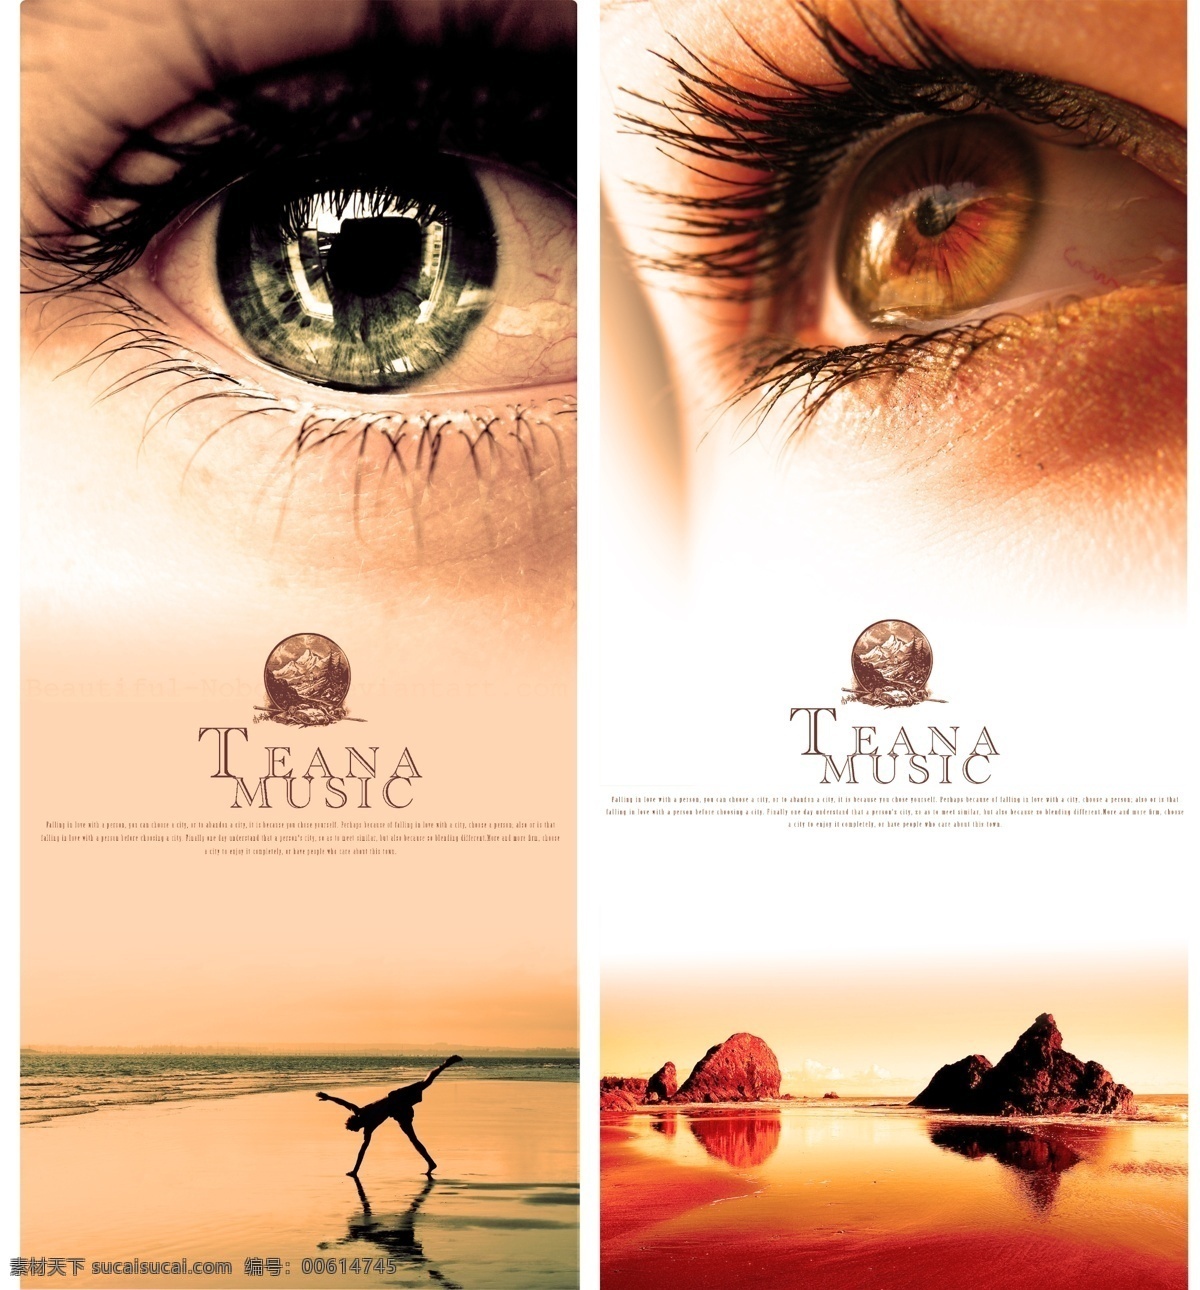 眼睛 特写 模板 眼睛广告海报 眼睛特写 风景 沙滩 山水 广告设计模板 源文件 分层 红色